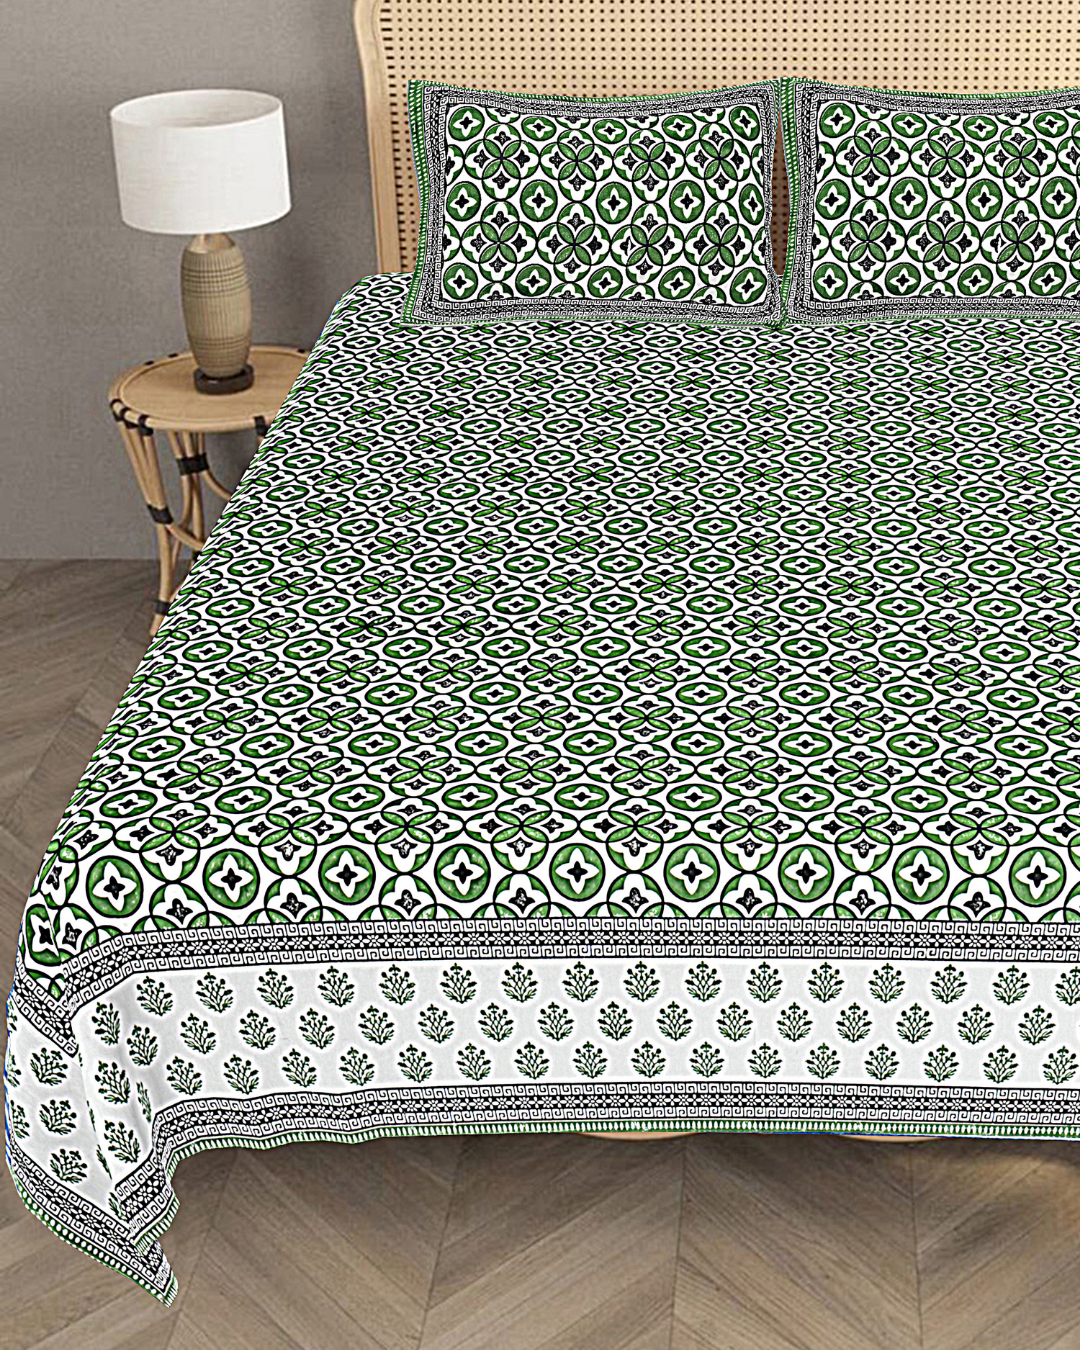 Marrakesh Bedsheet in Tile Print Green